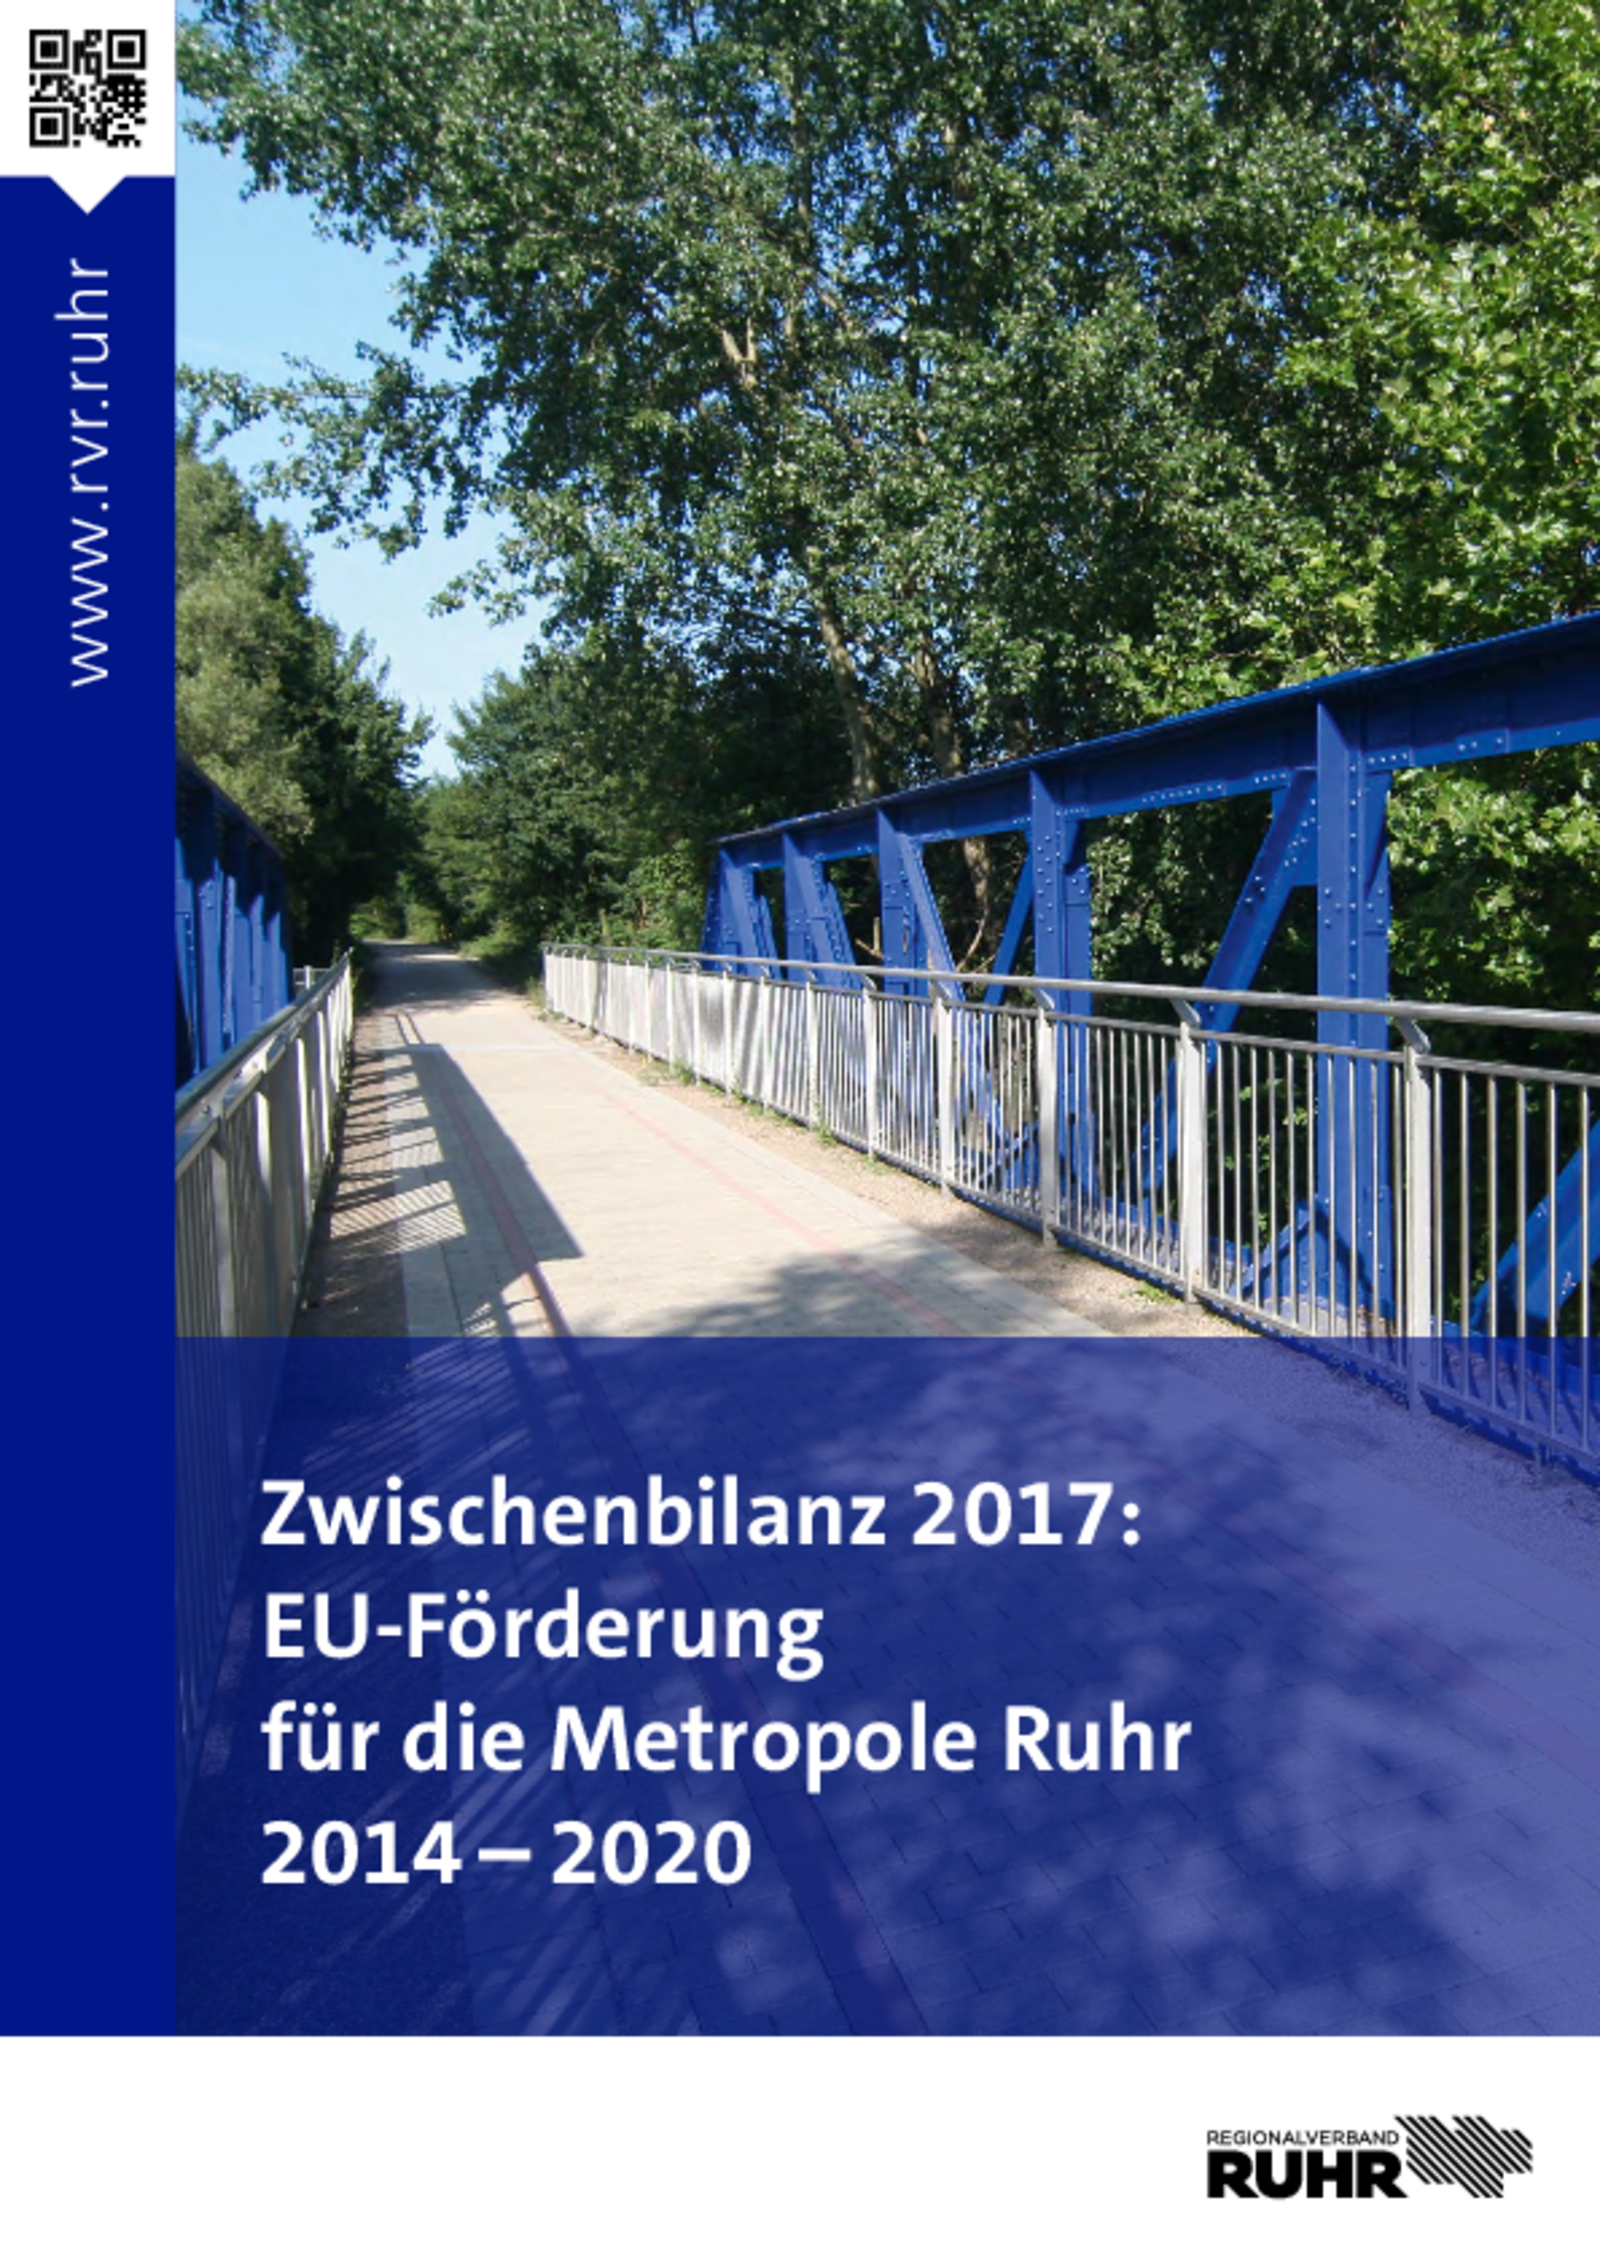 Download: Zwischenbilanz EU-Förderung 2017 (PDF)